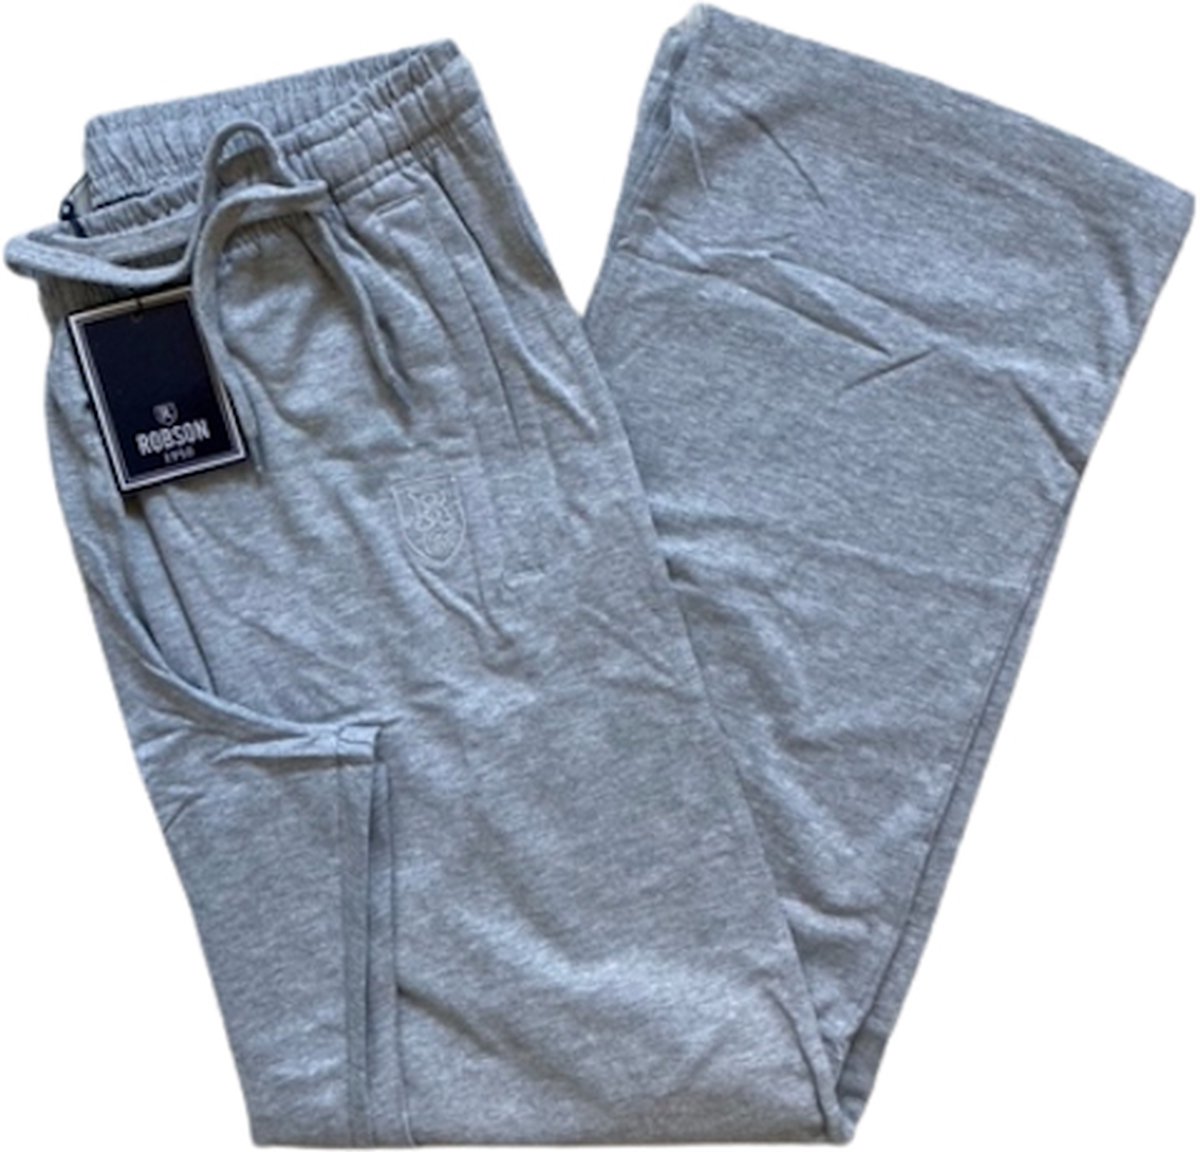 Robson loungewear/jogging broek maat 56 (2XL) grey melange | bol.com